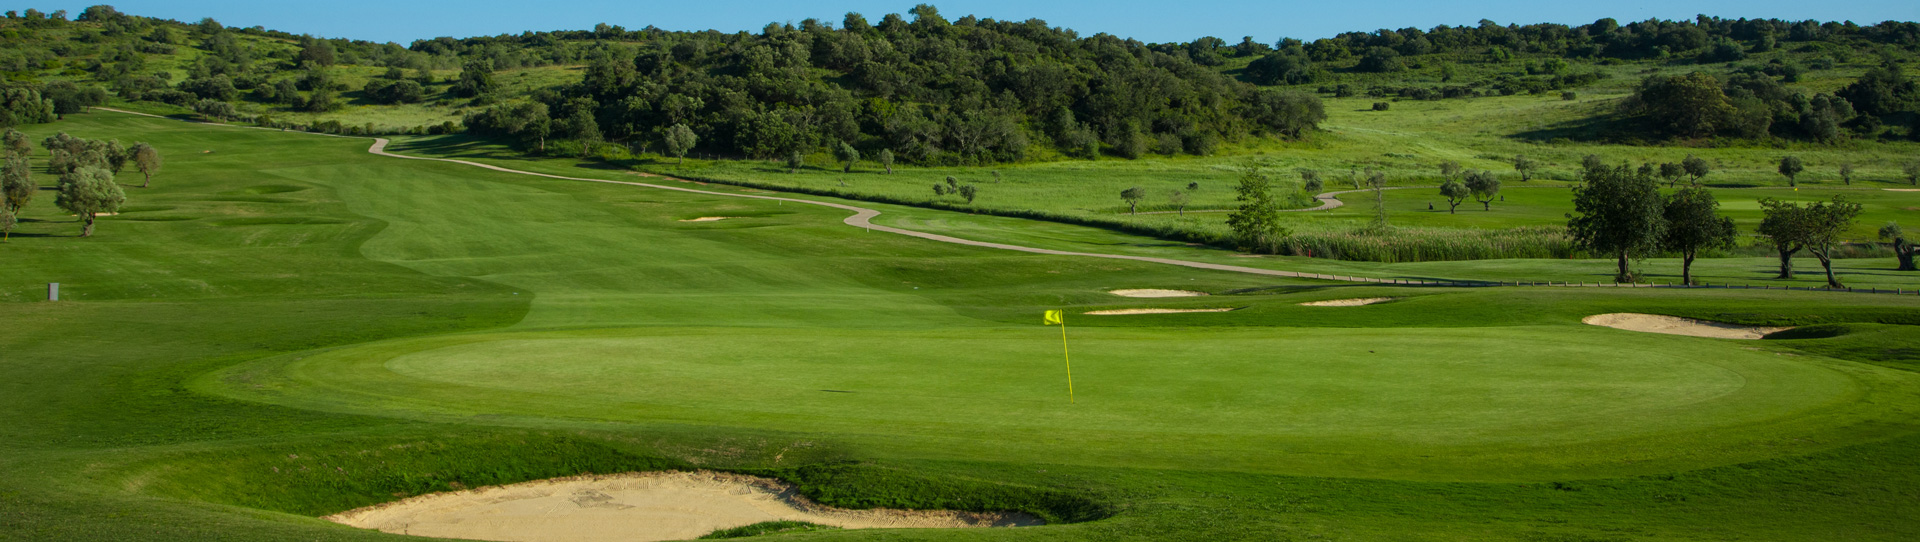 Portugal golf holidays - Salgados / Alamos / Morgado - Photo 3